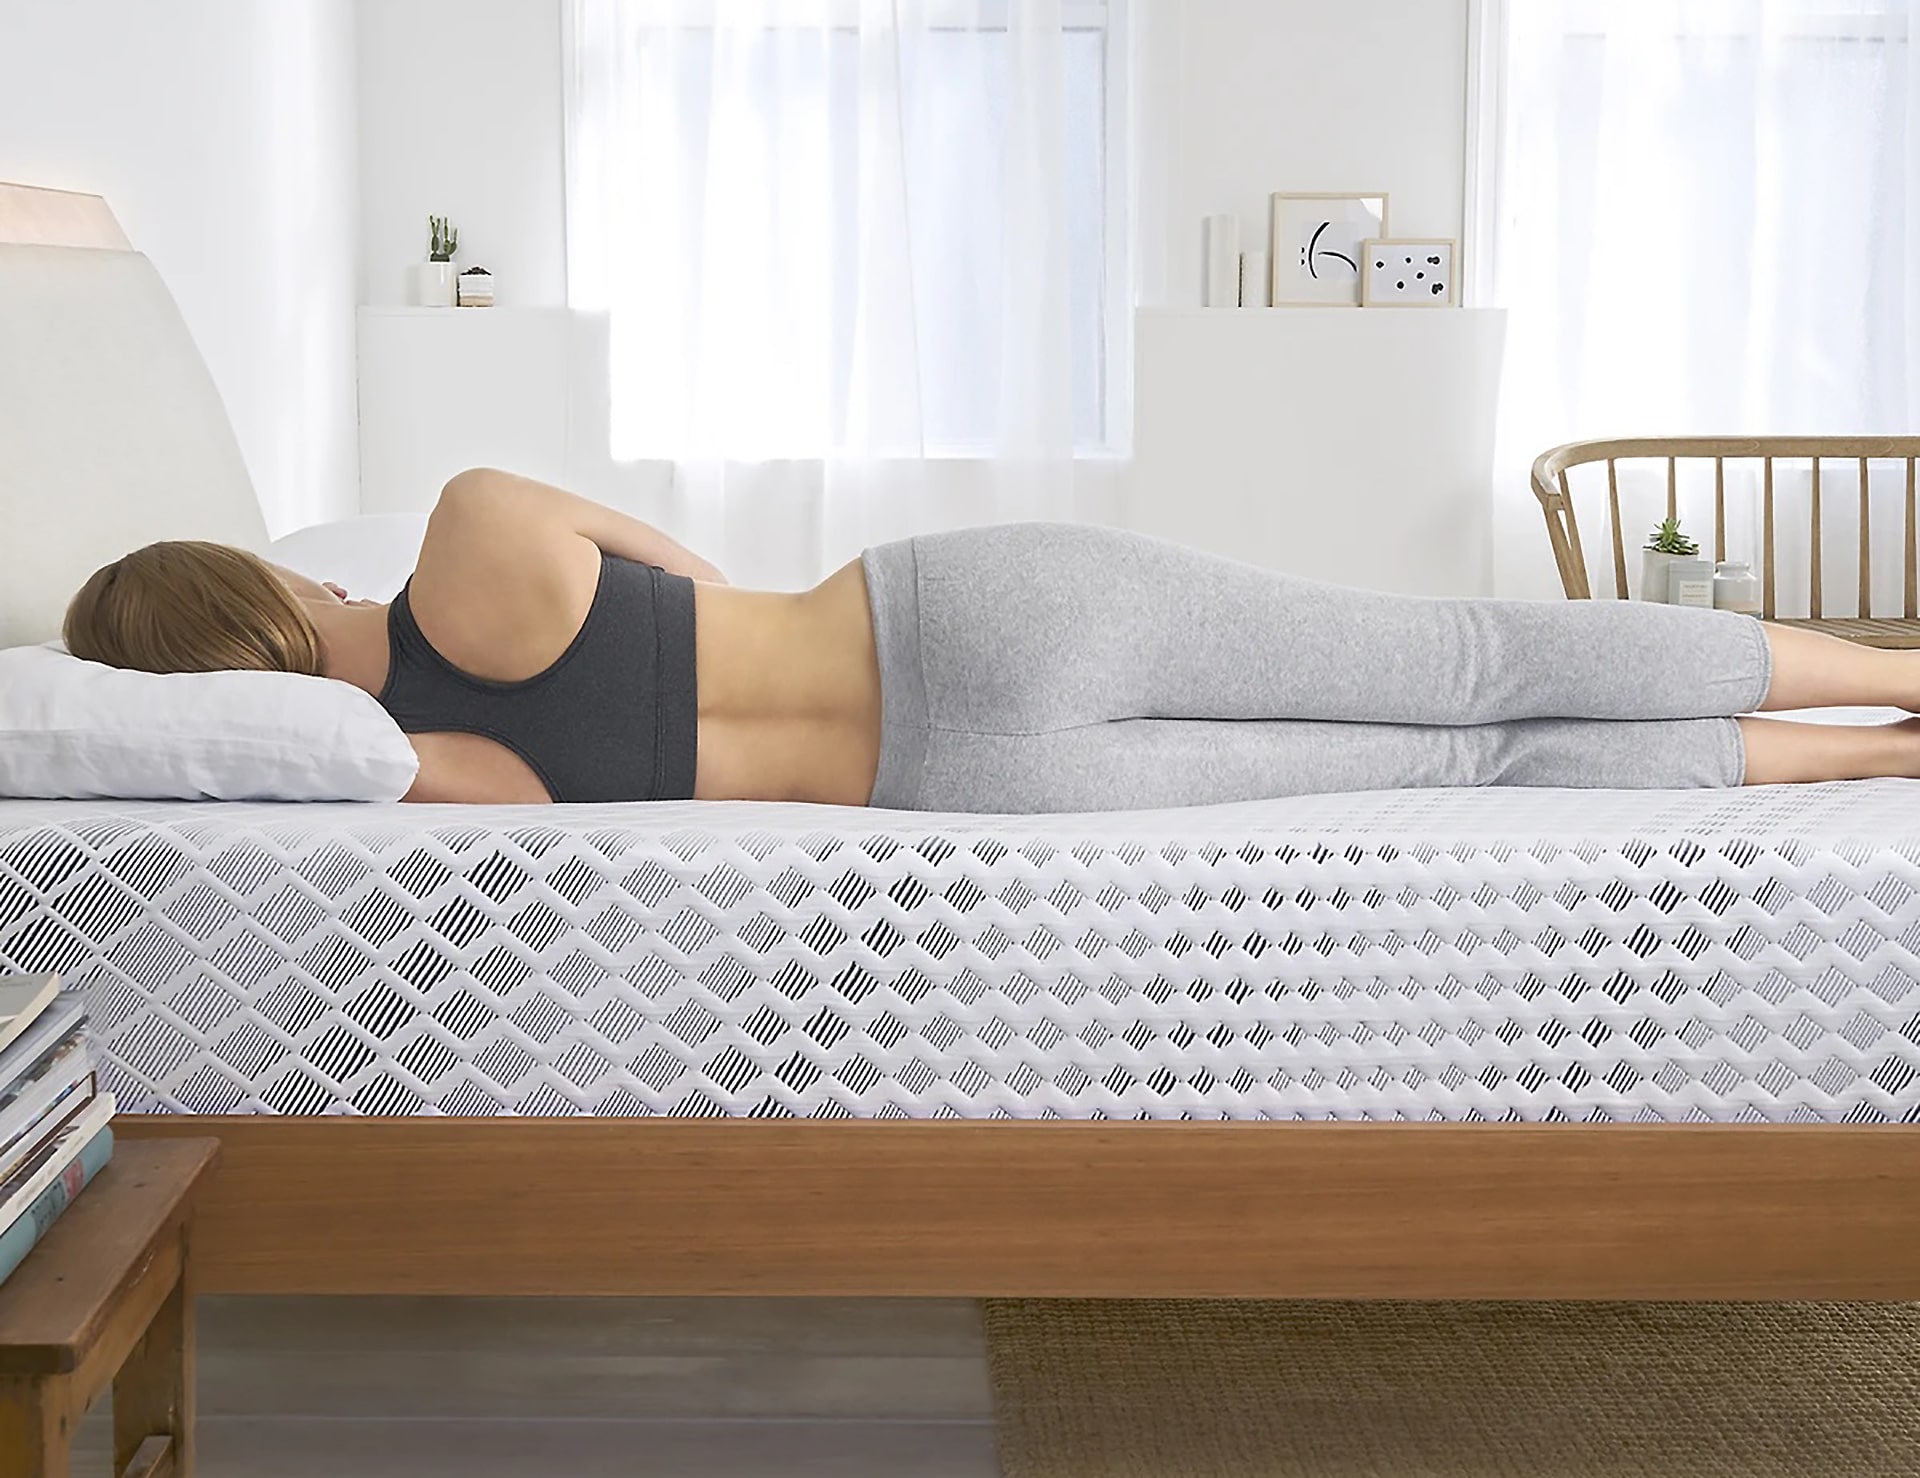 ways to make mattress firmer